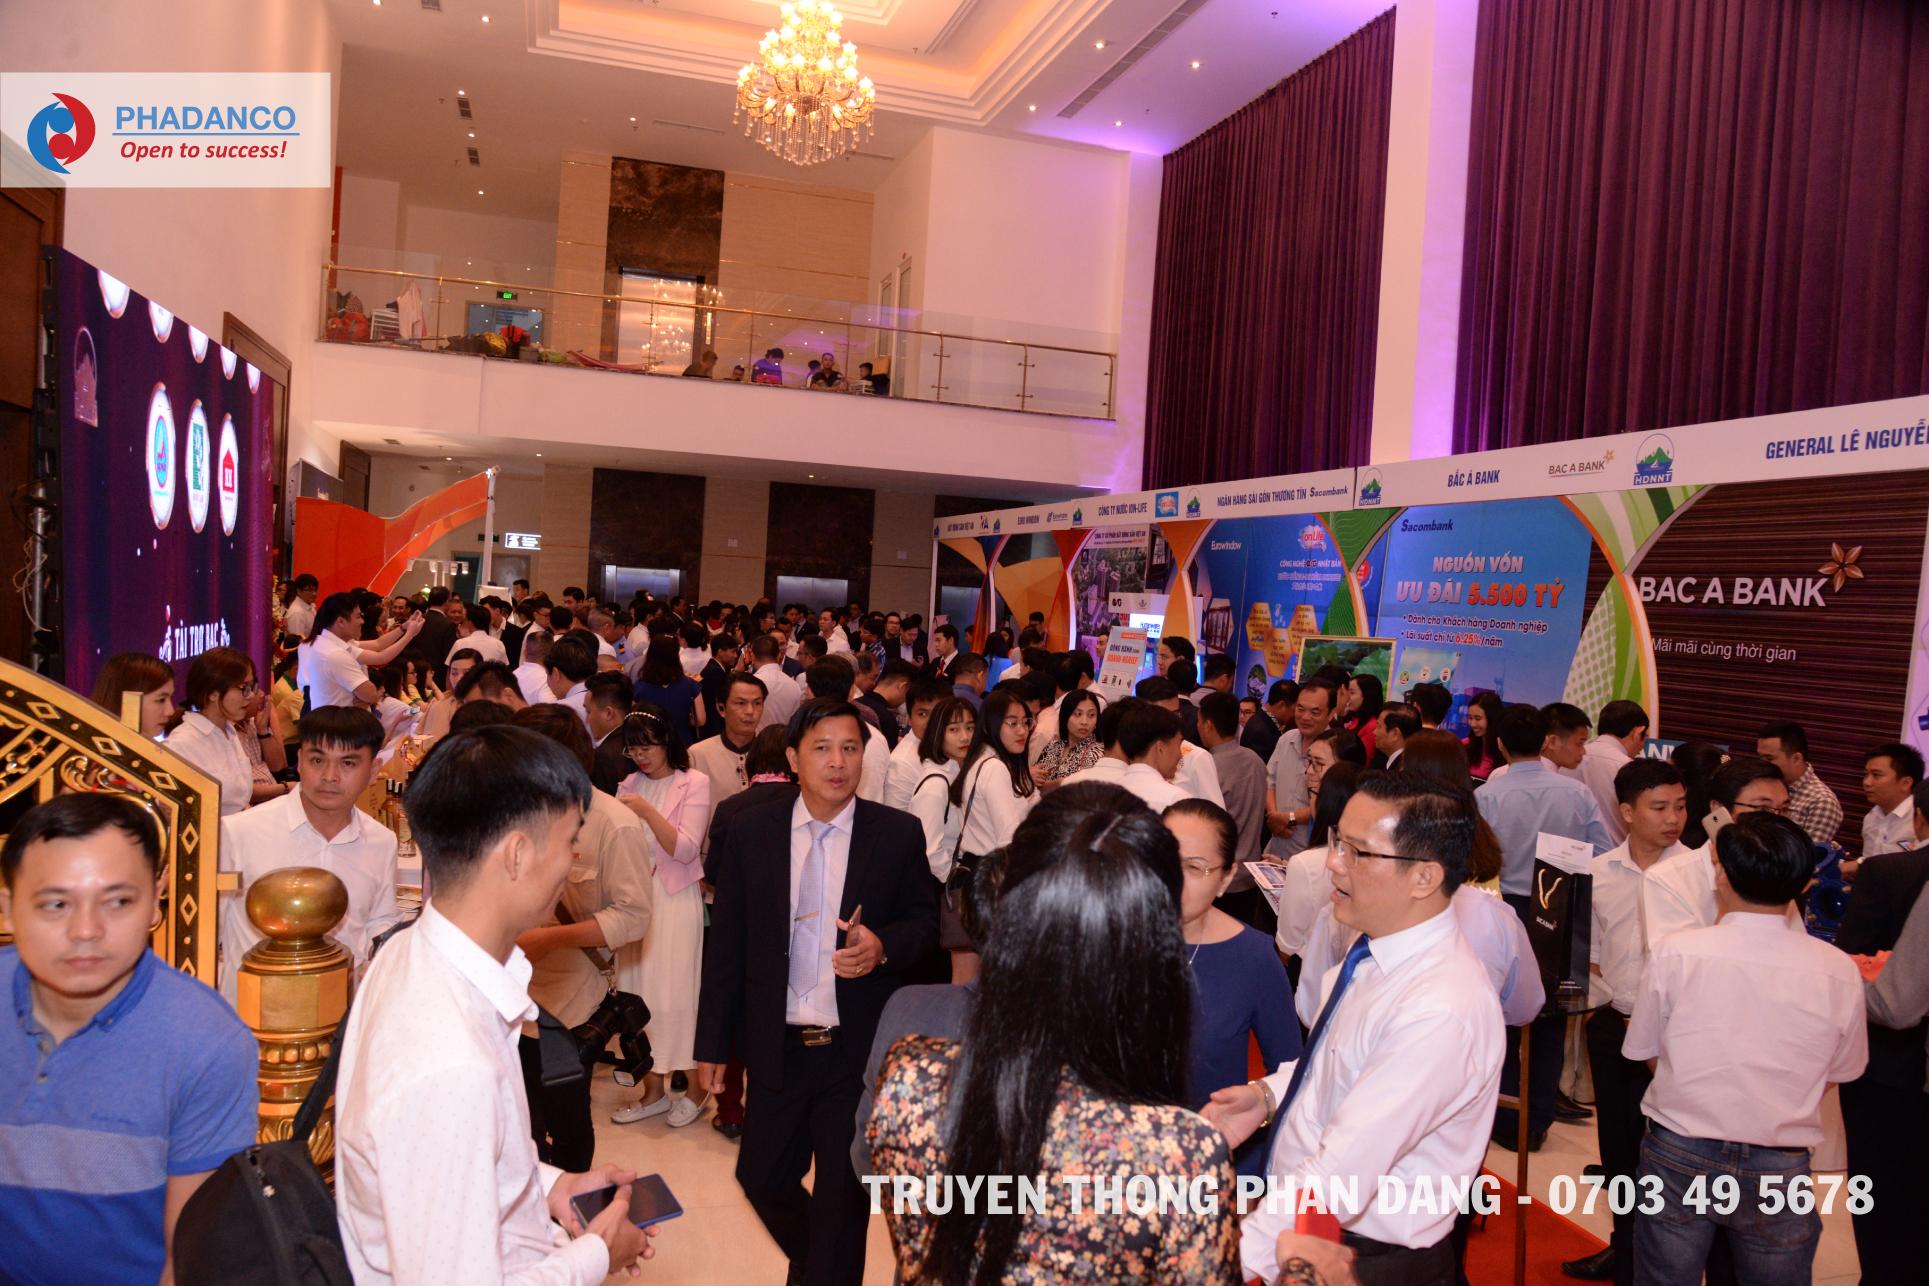 Công ty tổ chức sự kiện truyền thông Phan Đăng tổ chức lễ kỉ niệm 15 năm thành lập cho hội DN Nghệ Tĩnh tại TP.HCM